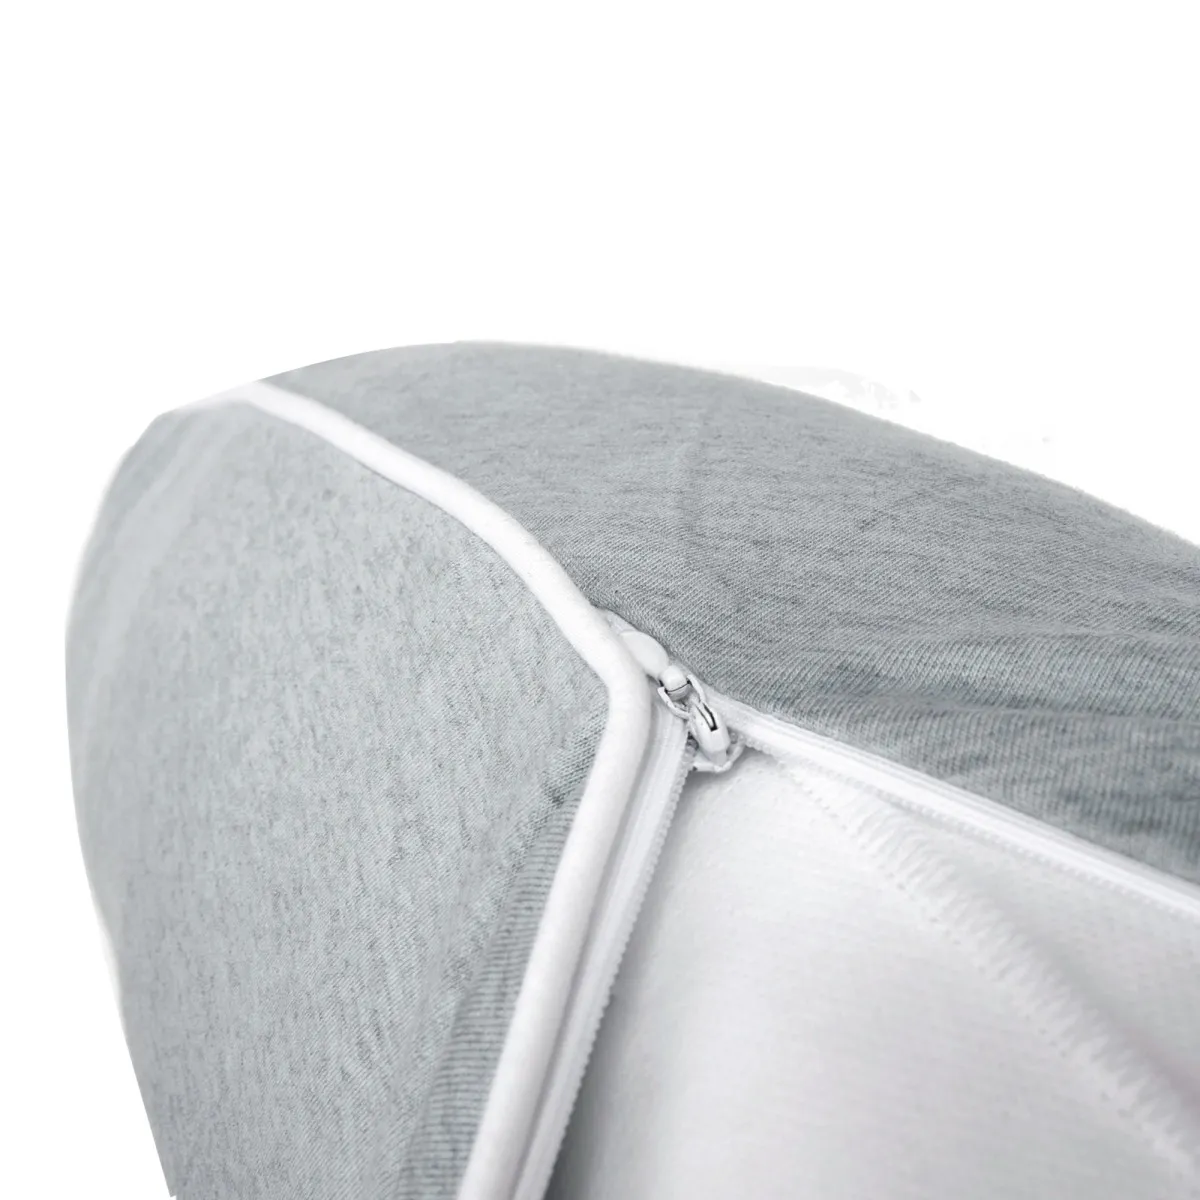 Nordic Coast jastuk za dojenje, 180cm